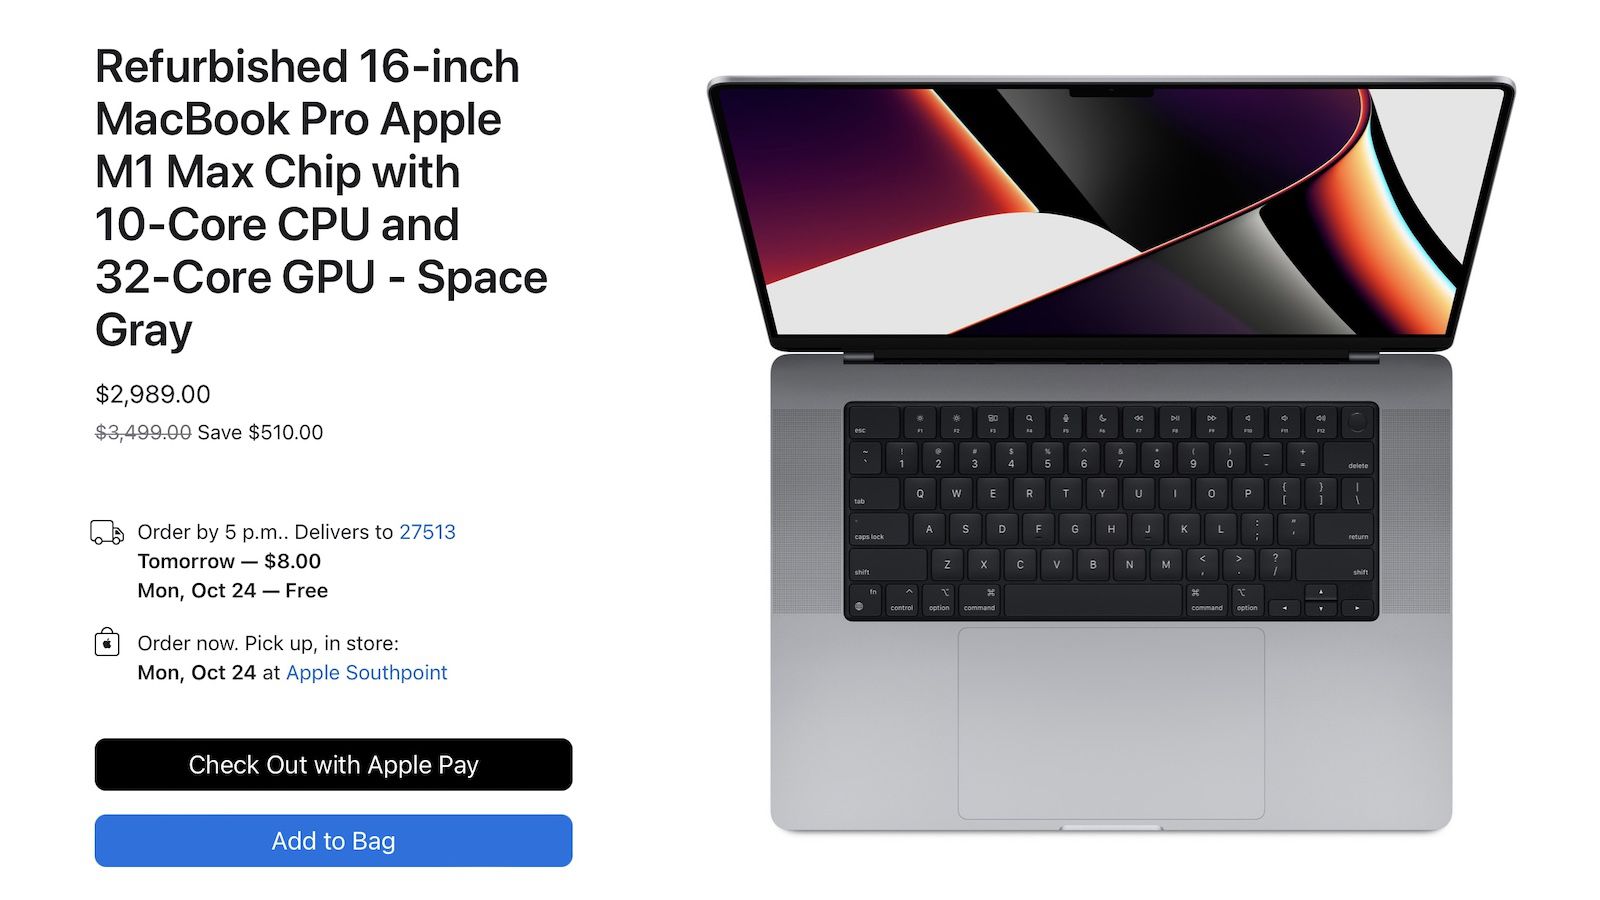 Refurb : MacBook Pro M1 à 1 229 € (-220 €)